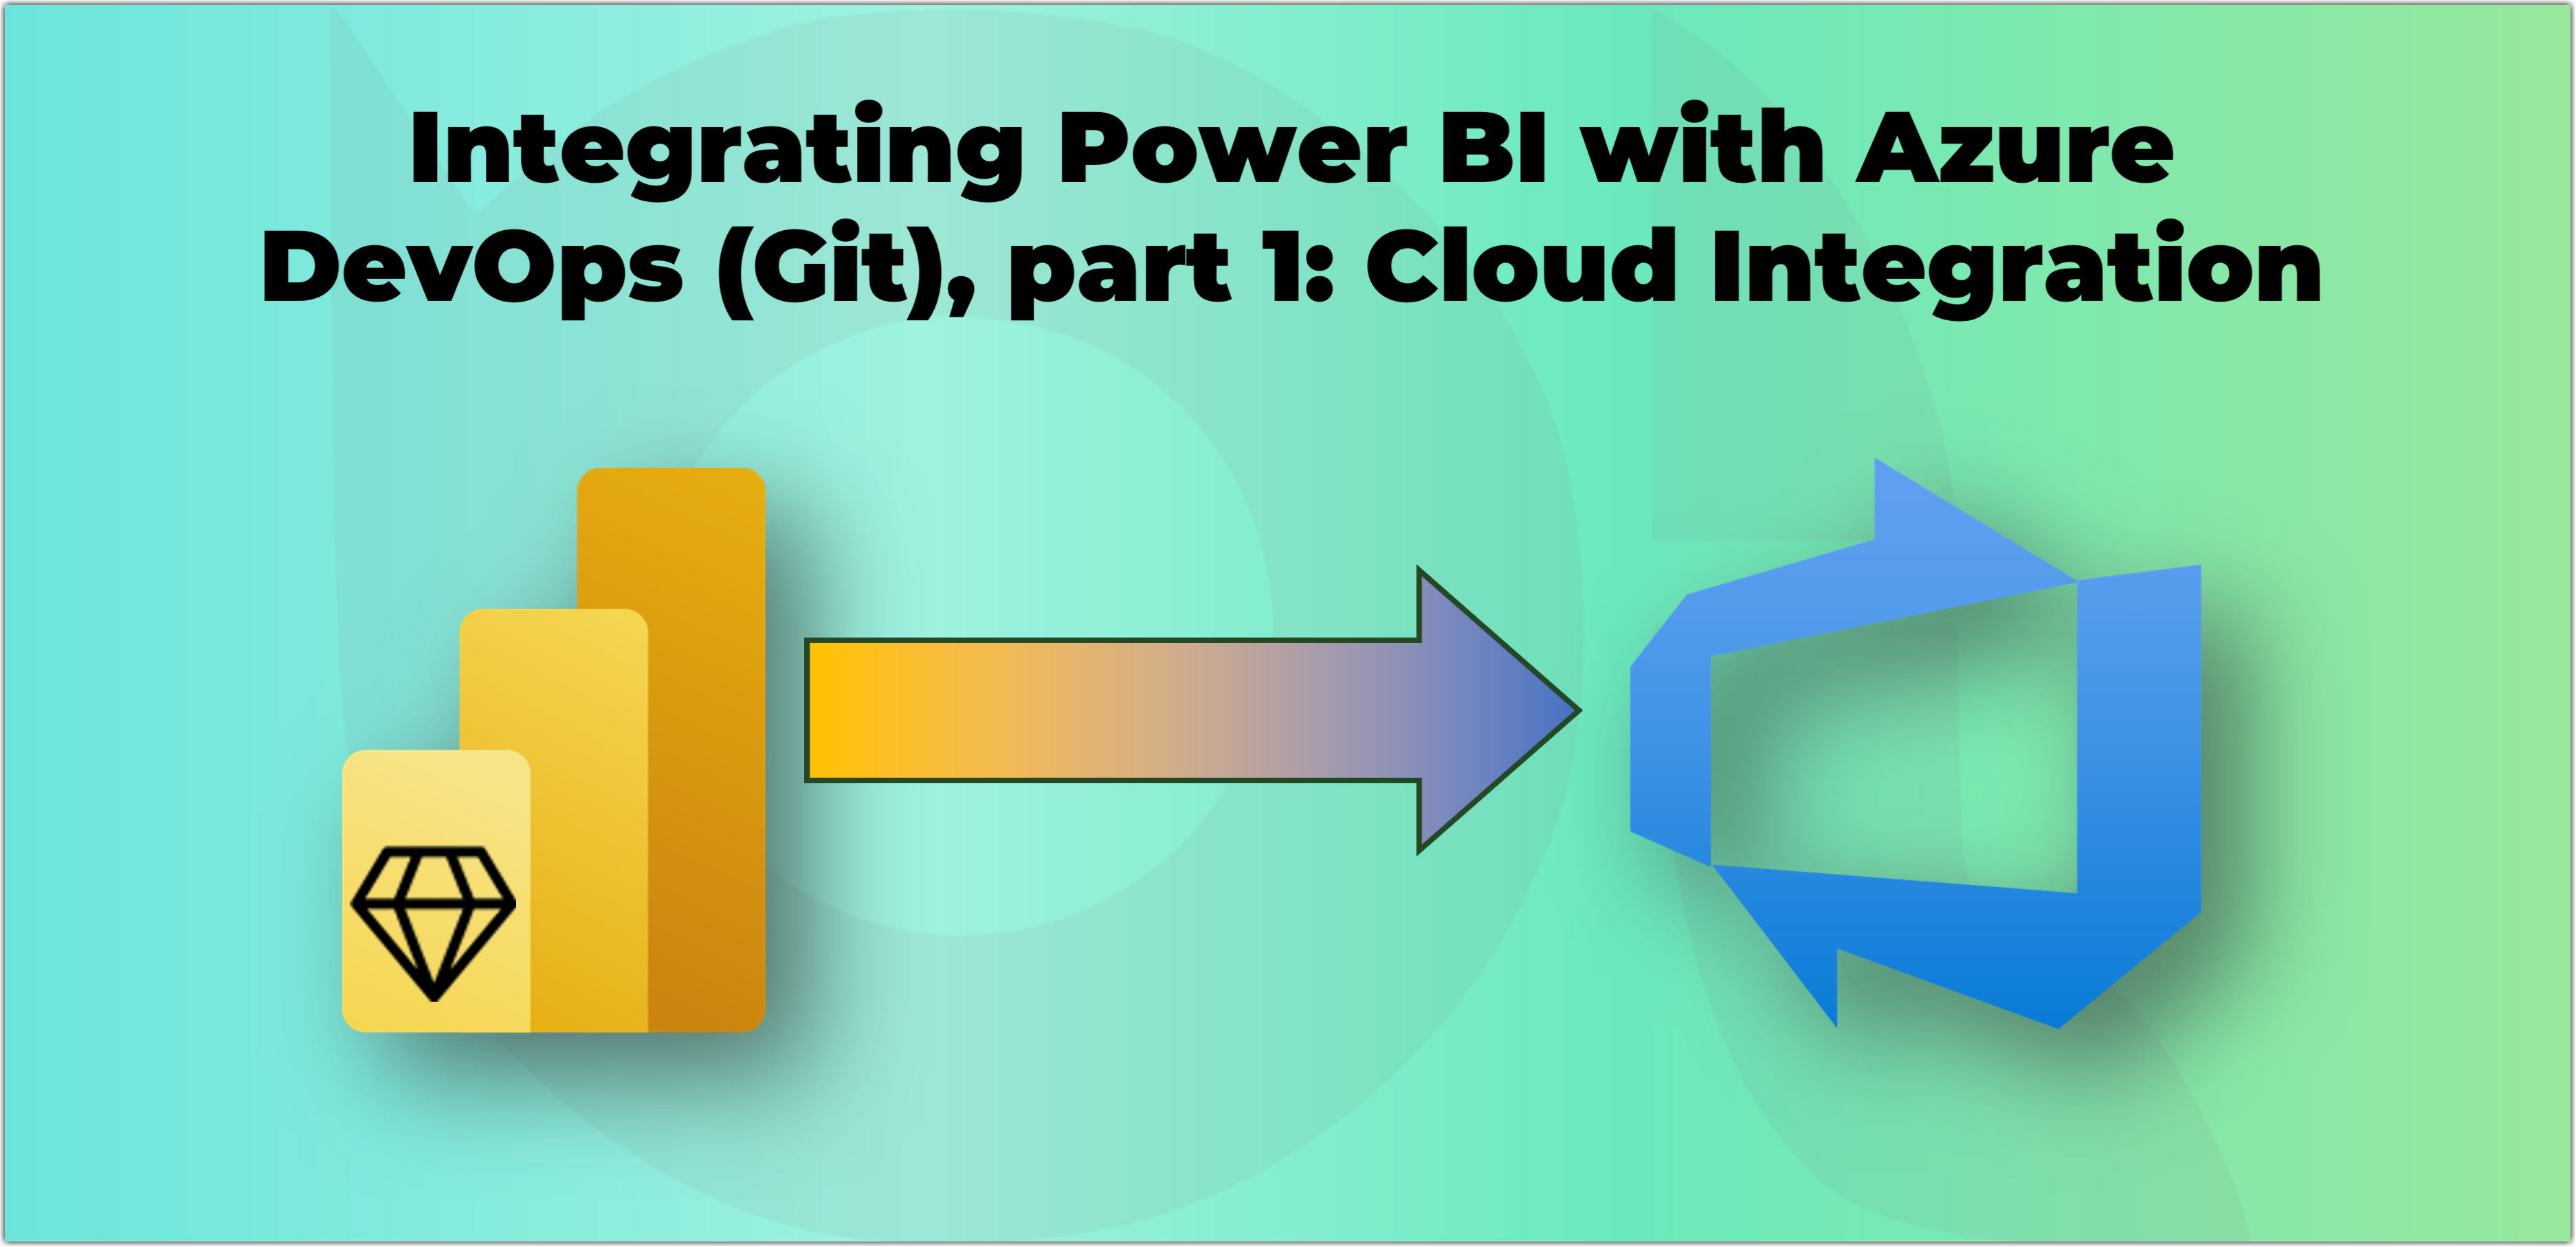 Integrating Power BI with AzureDevOps (Git), part 1: Cloud Integration